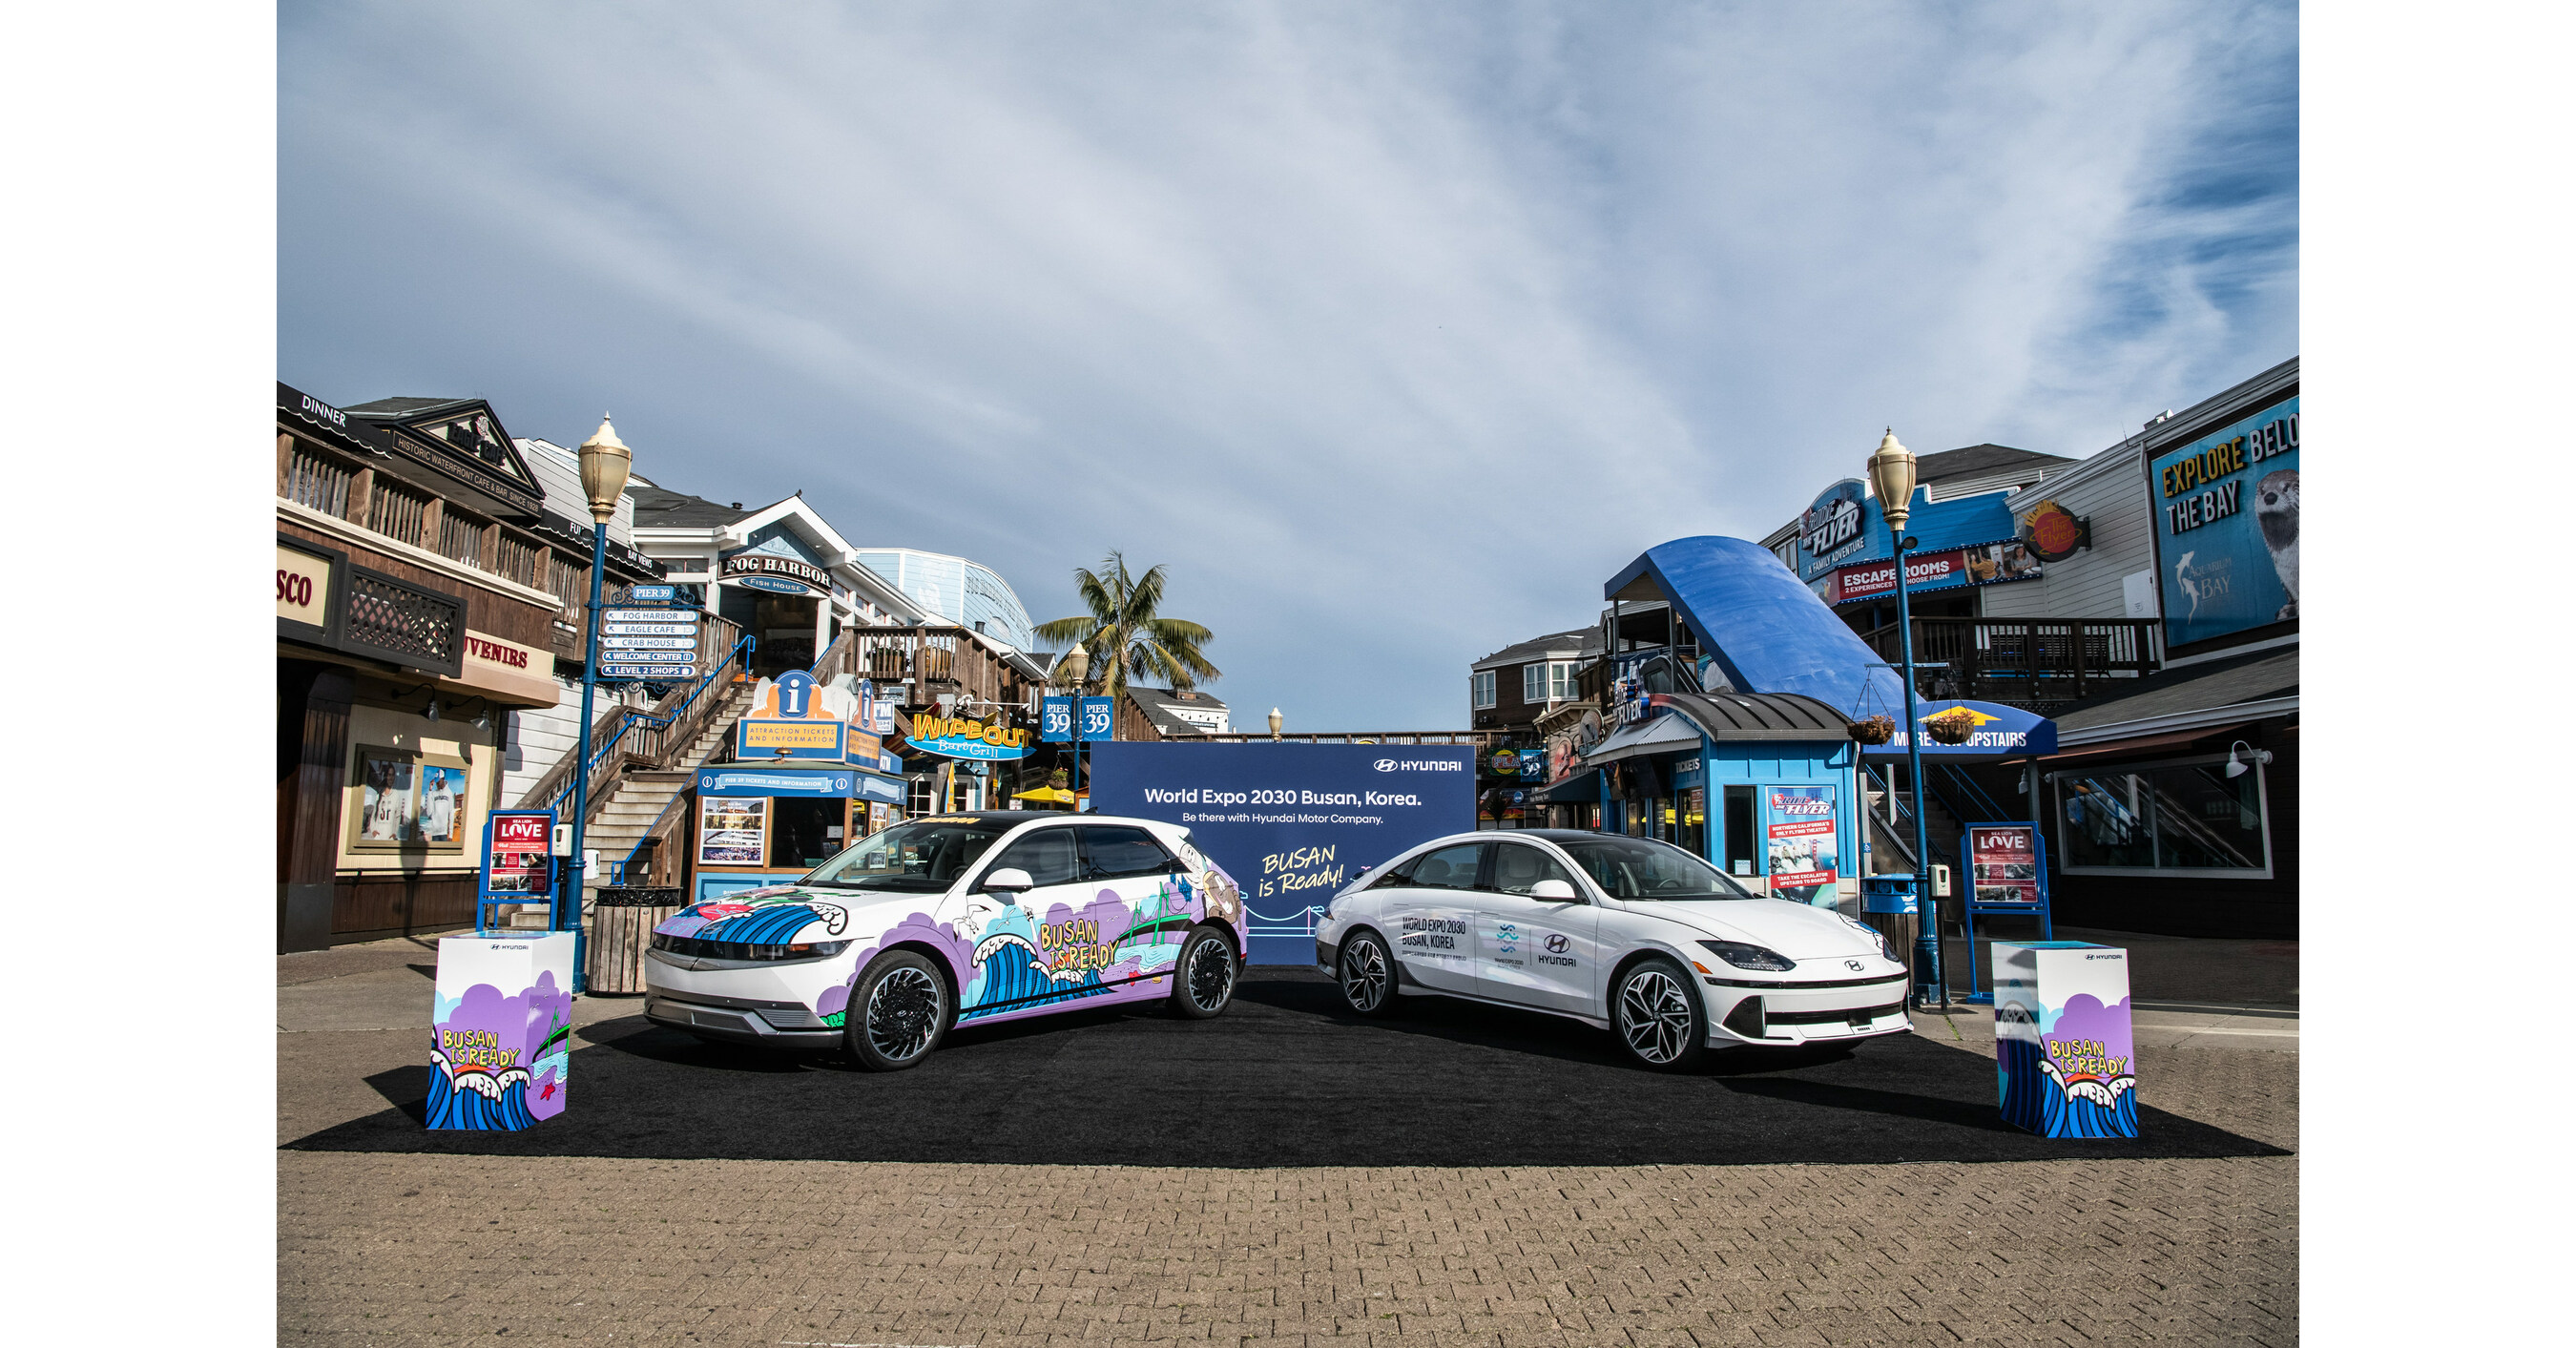 Die Hyundai Motor Group bringt Kunstautos nach San Francisco und stärkt damit Busans Bewerbung um die Ausrichtung der Weltausstellung 2030